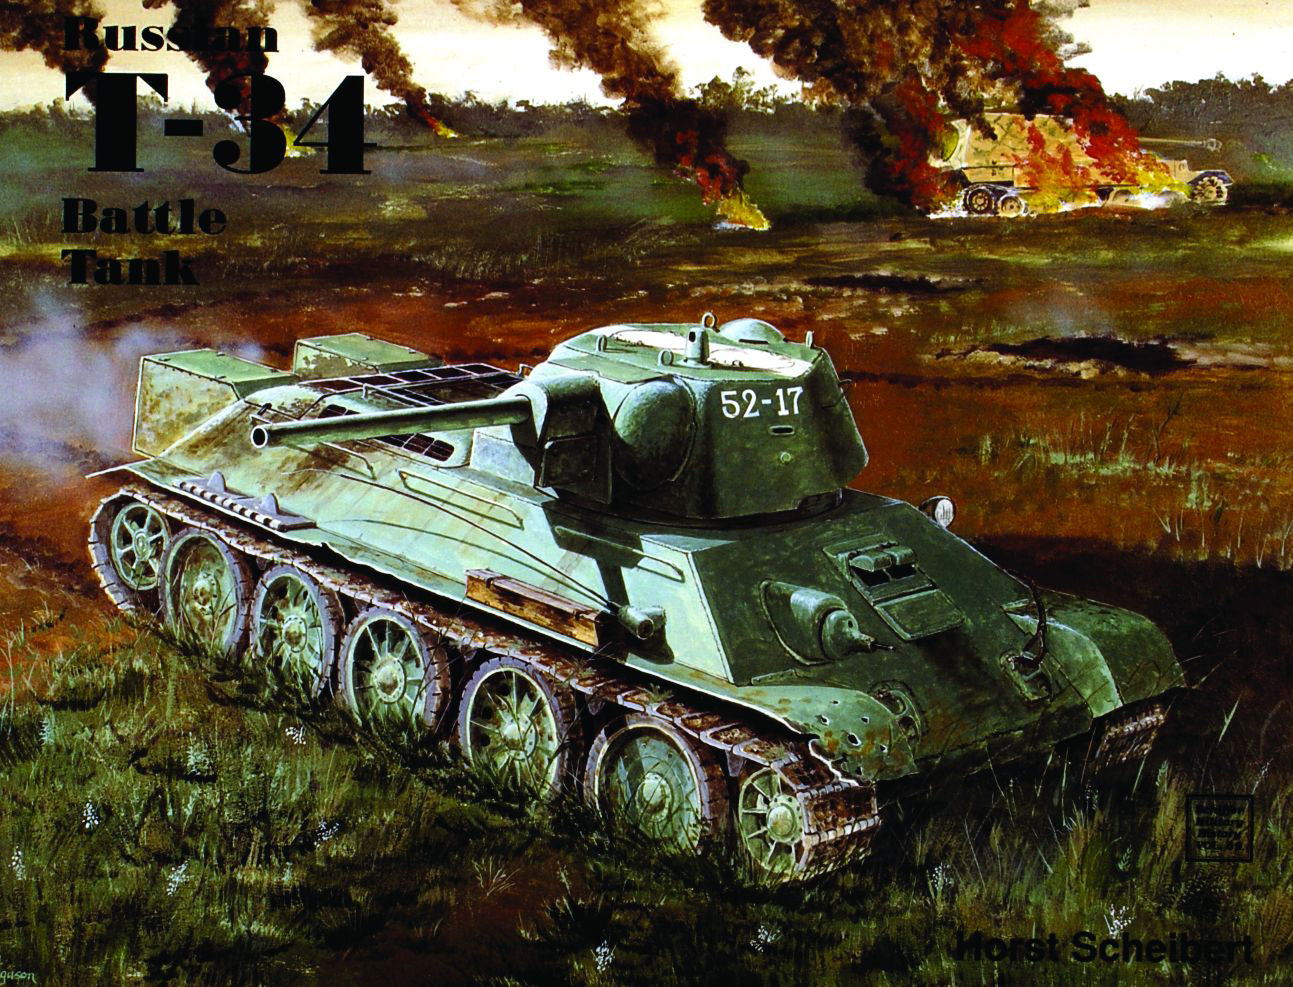 The Russian T-34 Battle Tank